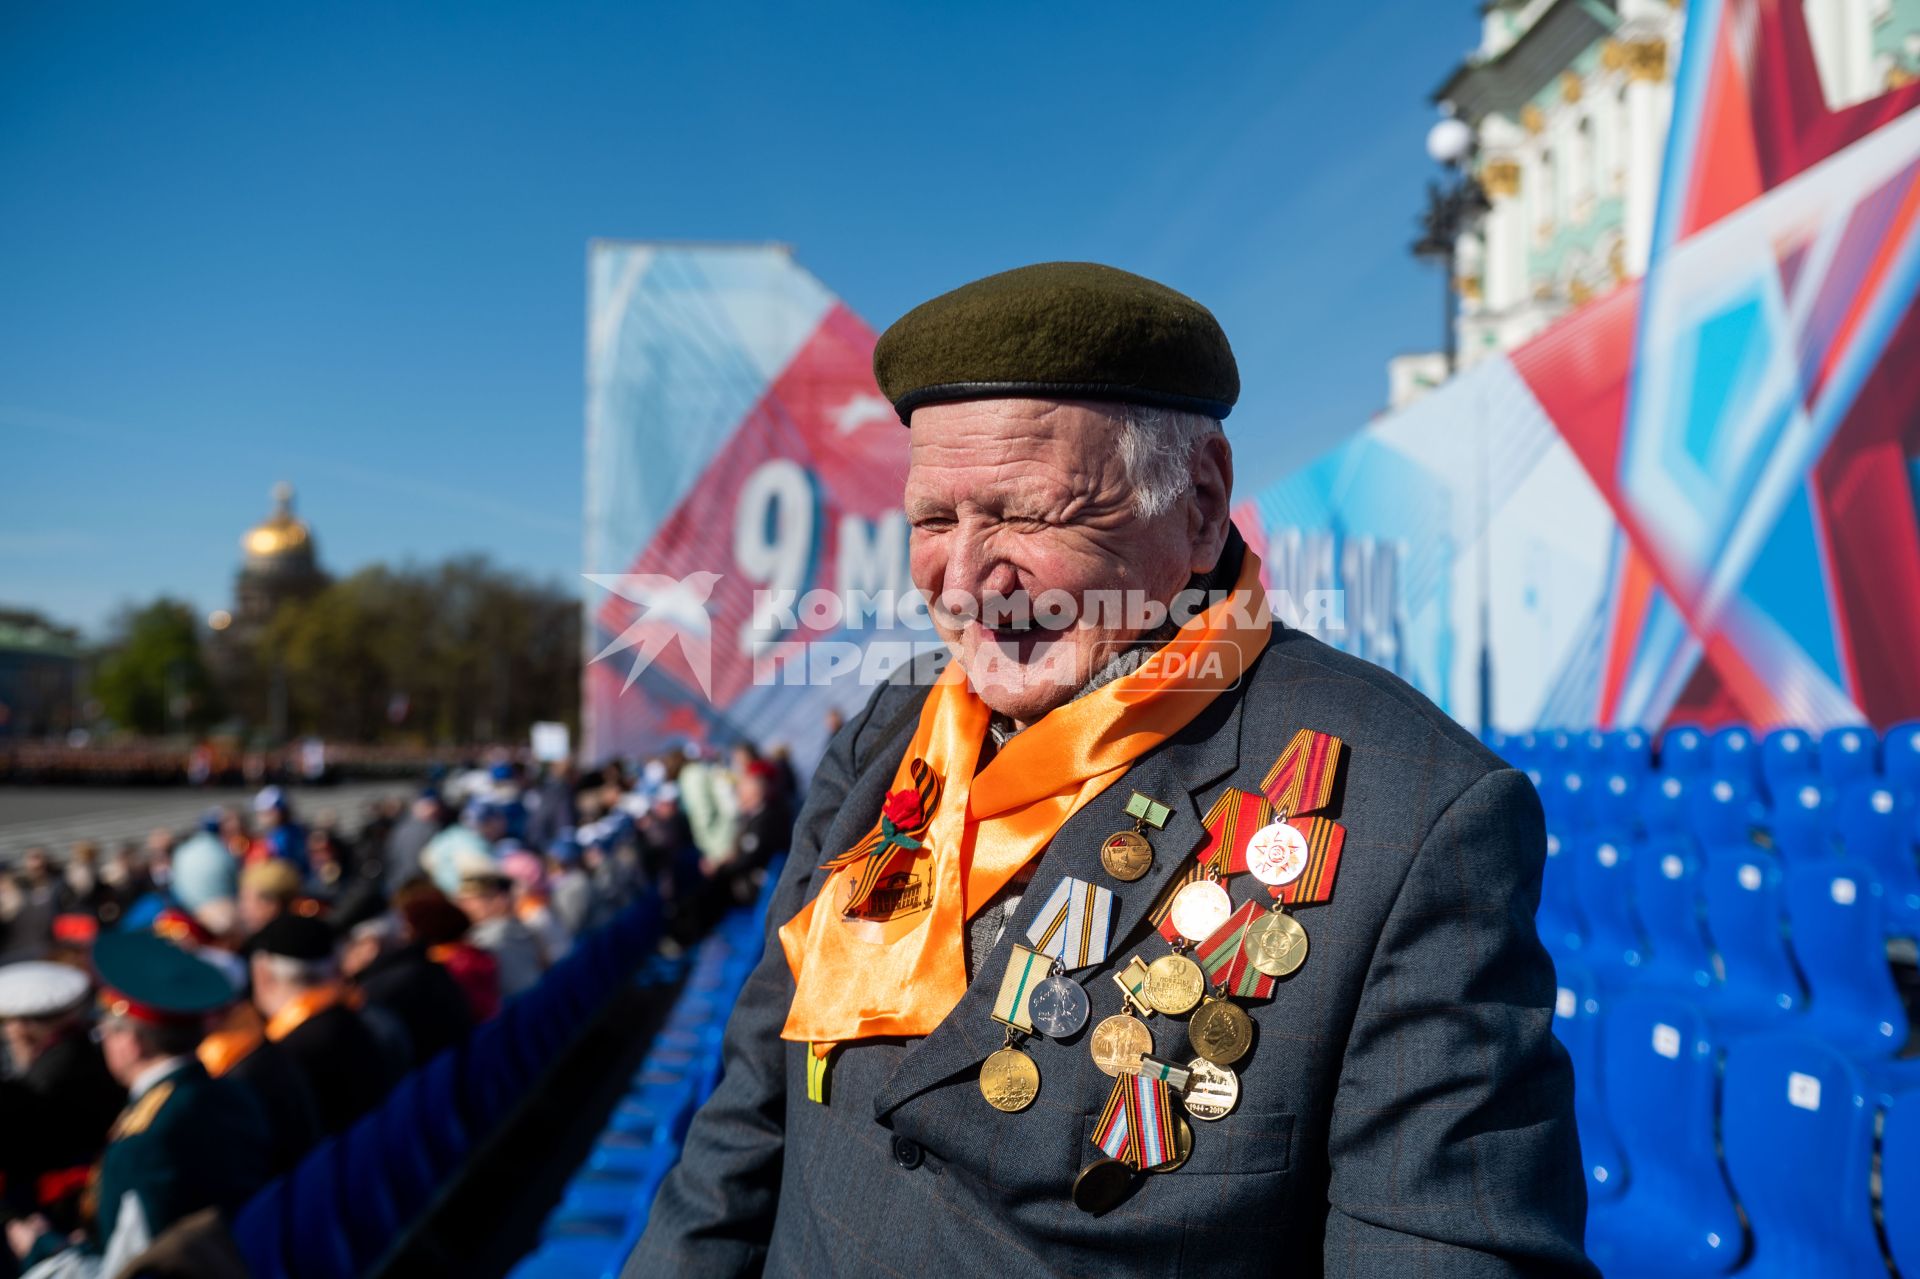 Санкт-Петербург. Ветеран ВОВ во время парада, посвященного 78-й годовщине Победы в Великой Отечественной войне, на Дворцовой площади.